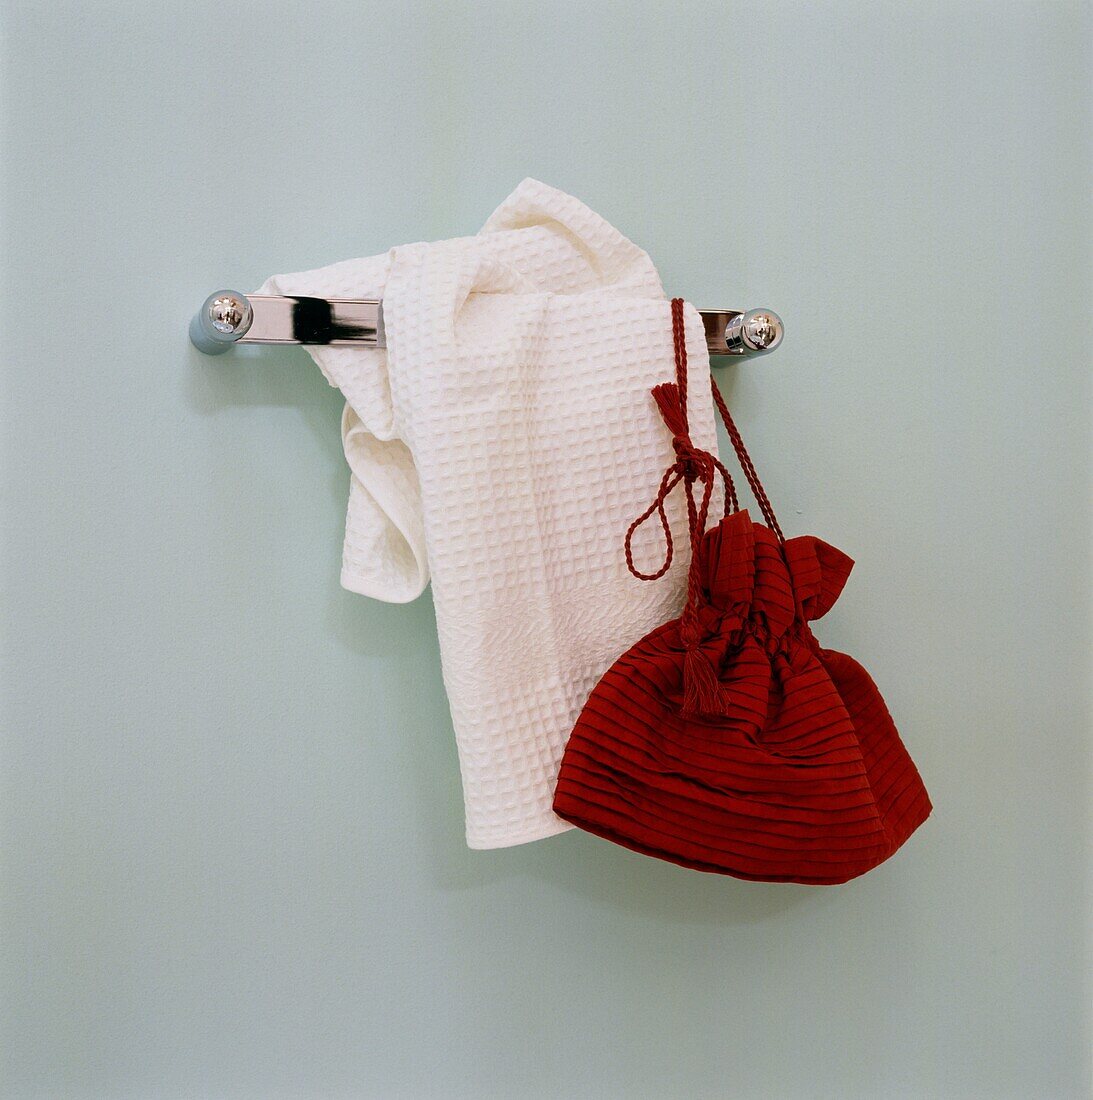 Red bag and white towel hang on bathroom wall